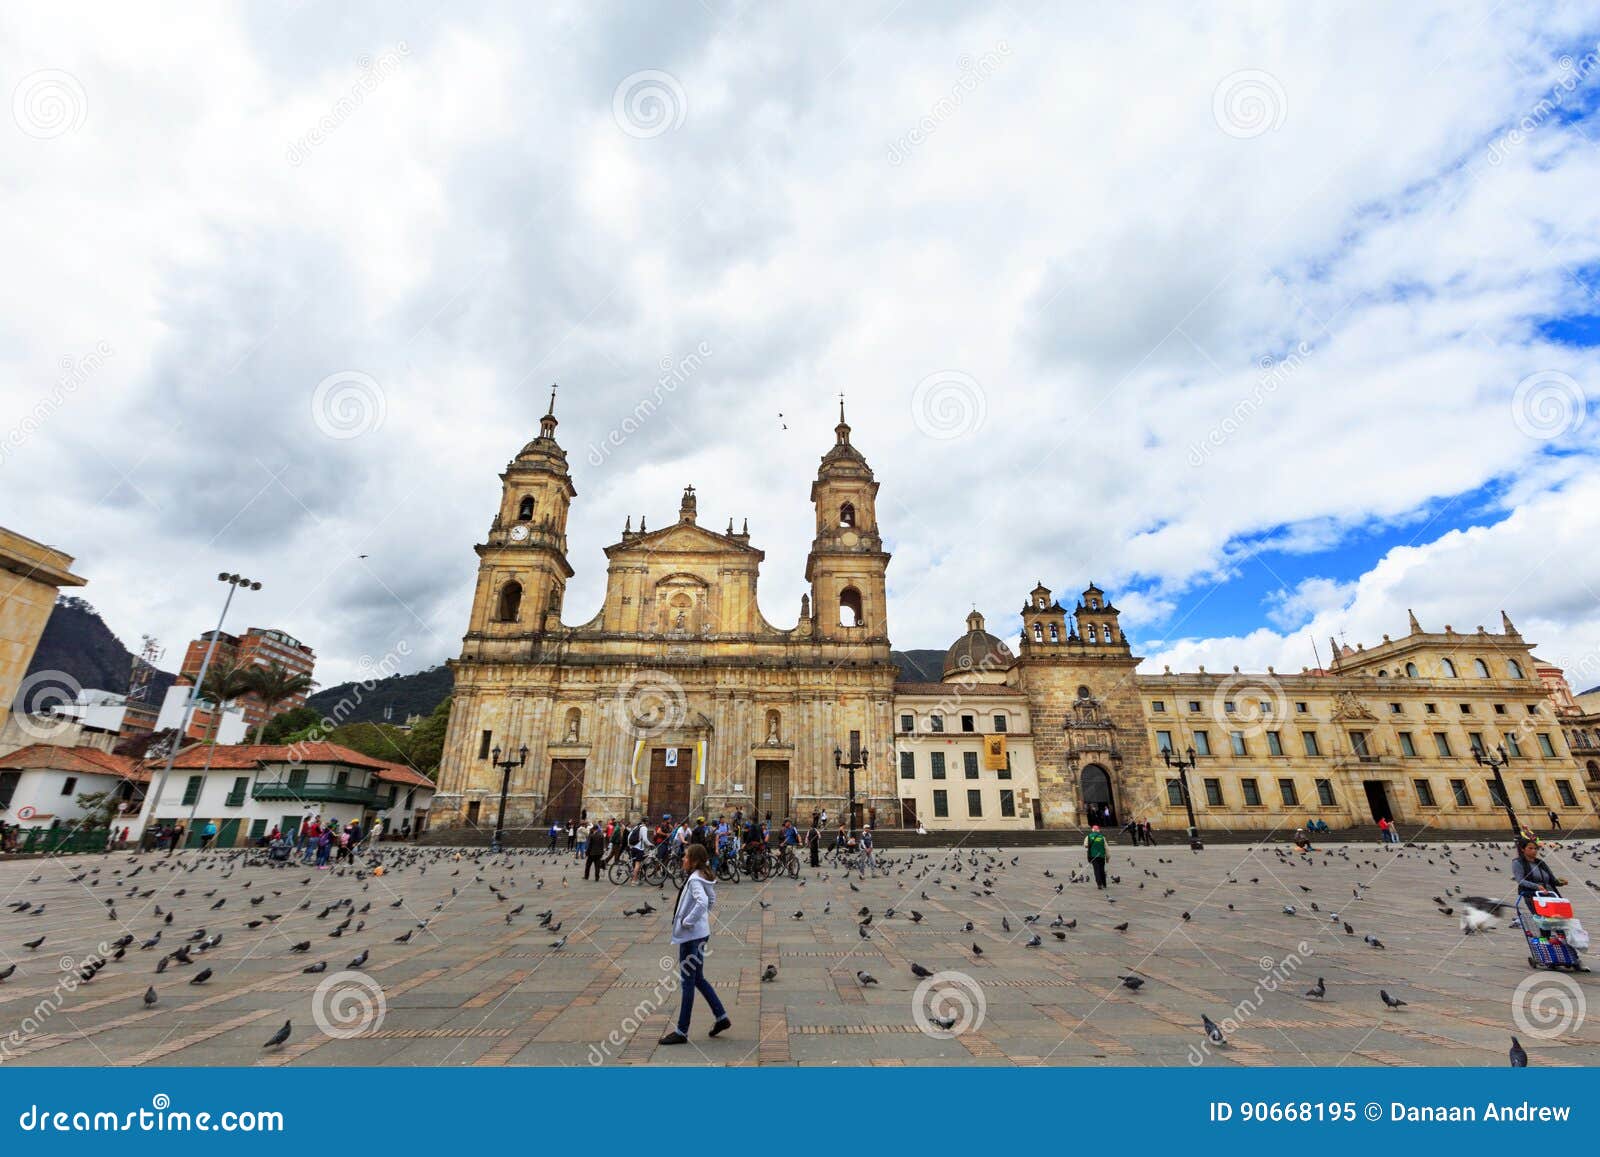 Quadrato del Bolivar. Bogota, Colombia - 21 aprile: I turisti non identificati durante un percorso in bicicletta esaminano la cappella di Catedral Primada il de Colombia e di Capilla Del Sangrario nella plaza De Bolivar il 21 aprile 2016 a Bogota, Colombia